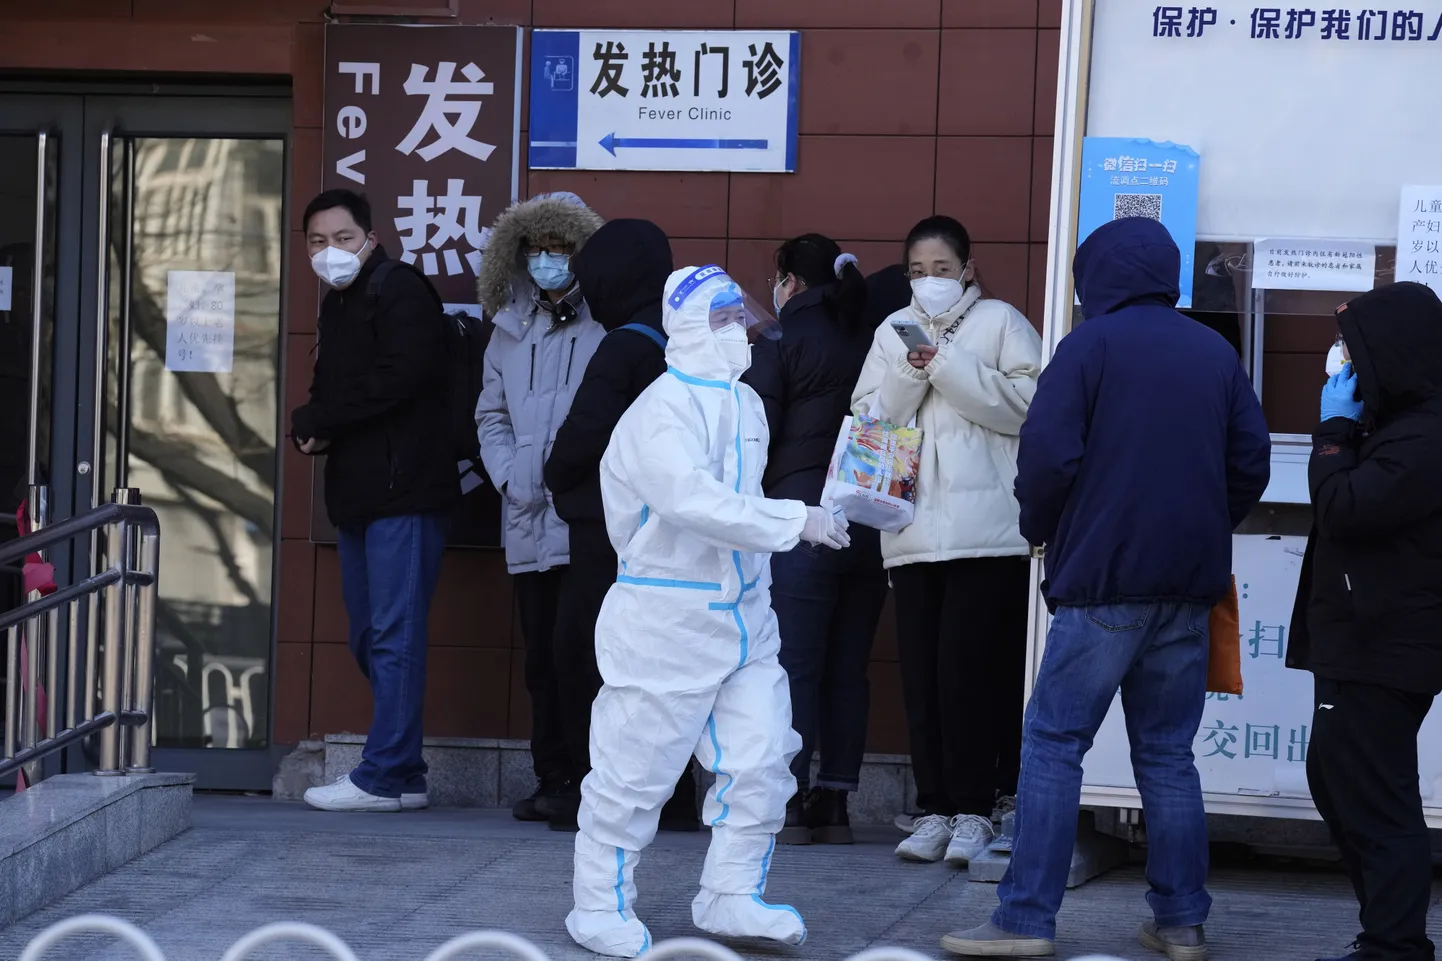 Kaitsemaskides inimeste järjekord Pekingi kliiniku juures. Foto on illustratiivne.